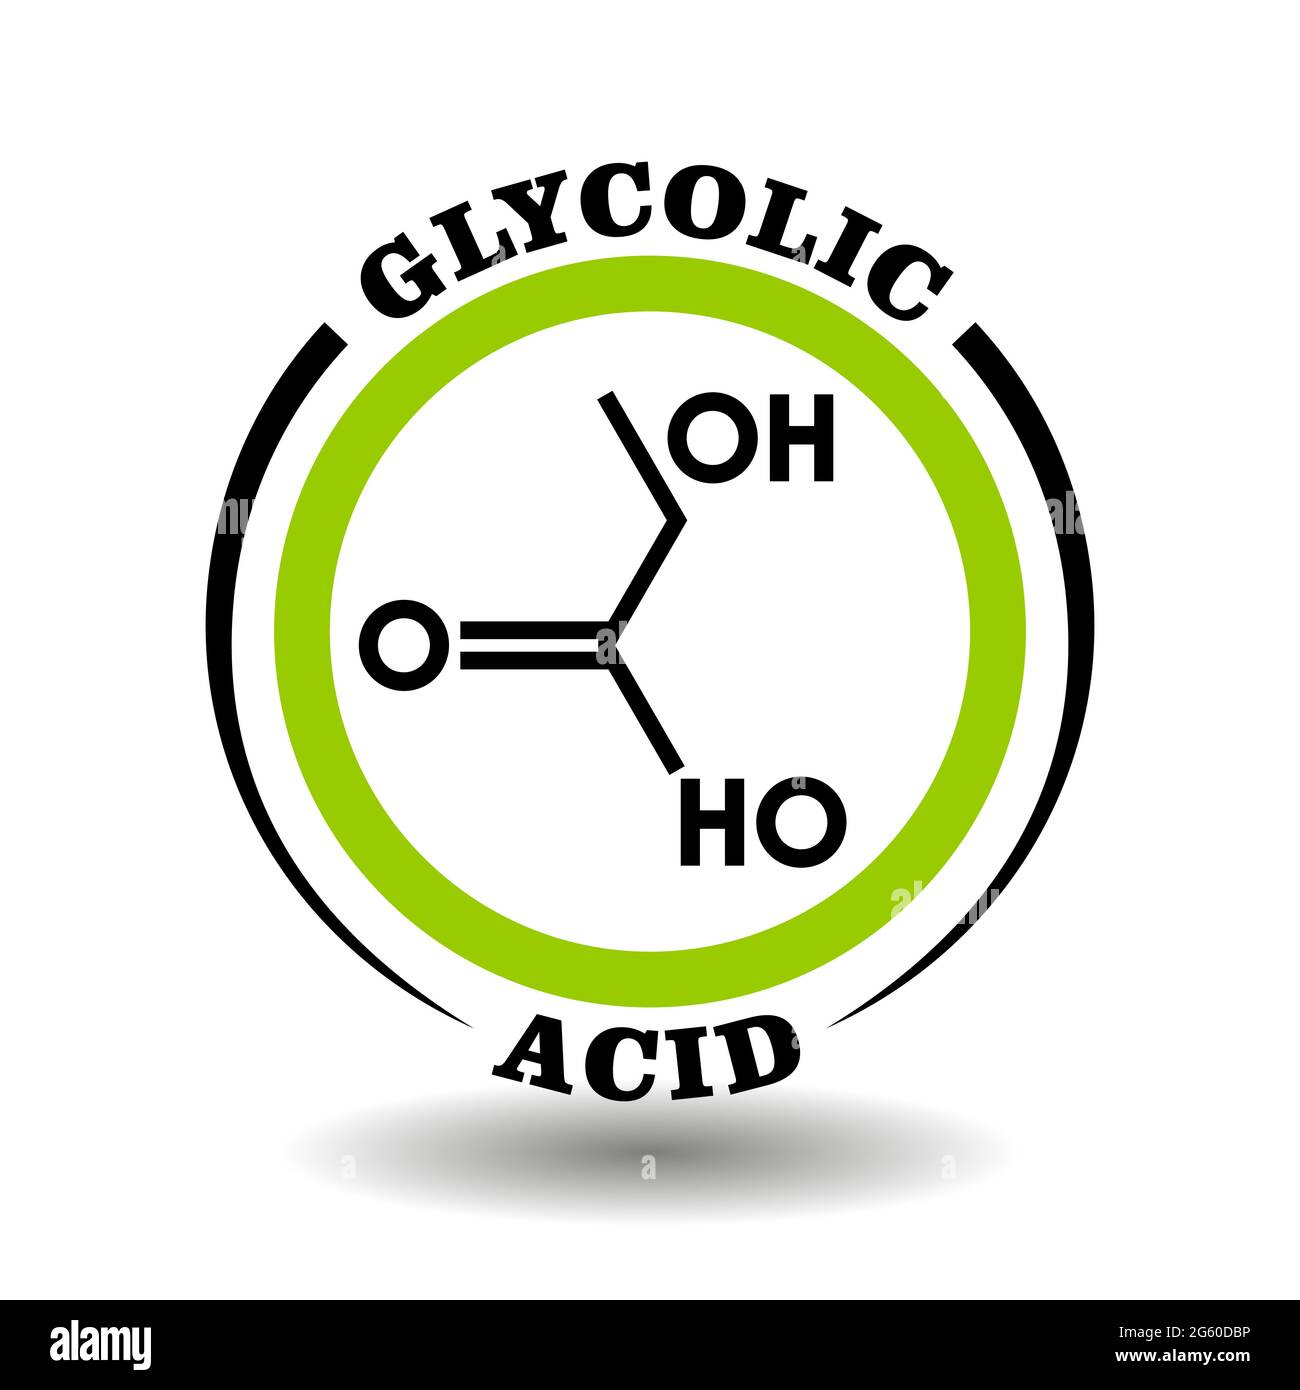 Cercle symbole vecteur avec formule chimique de l'acide glycolique symbole pour l'emballage des signes de cosmétiques, étiquettes de produits médicaux avec des ingrédients glycolate Illustration de Vecteur